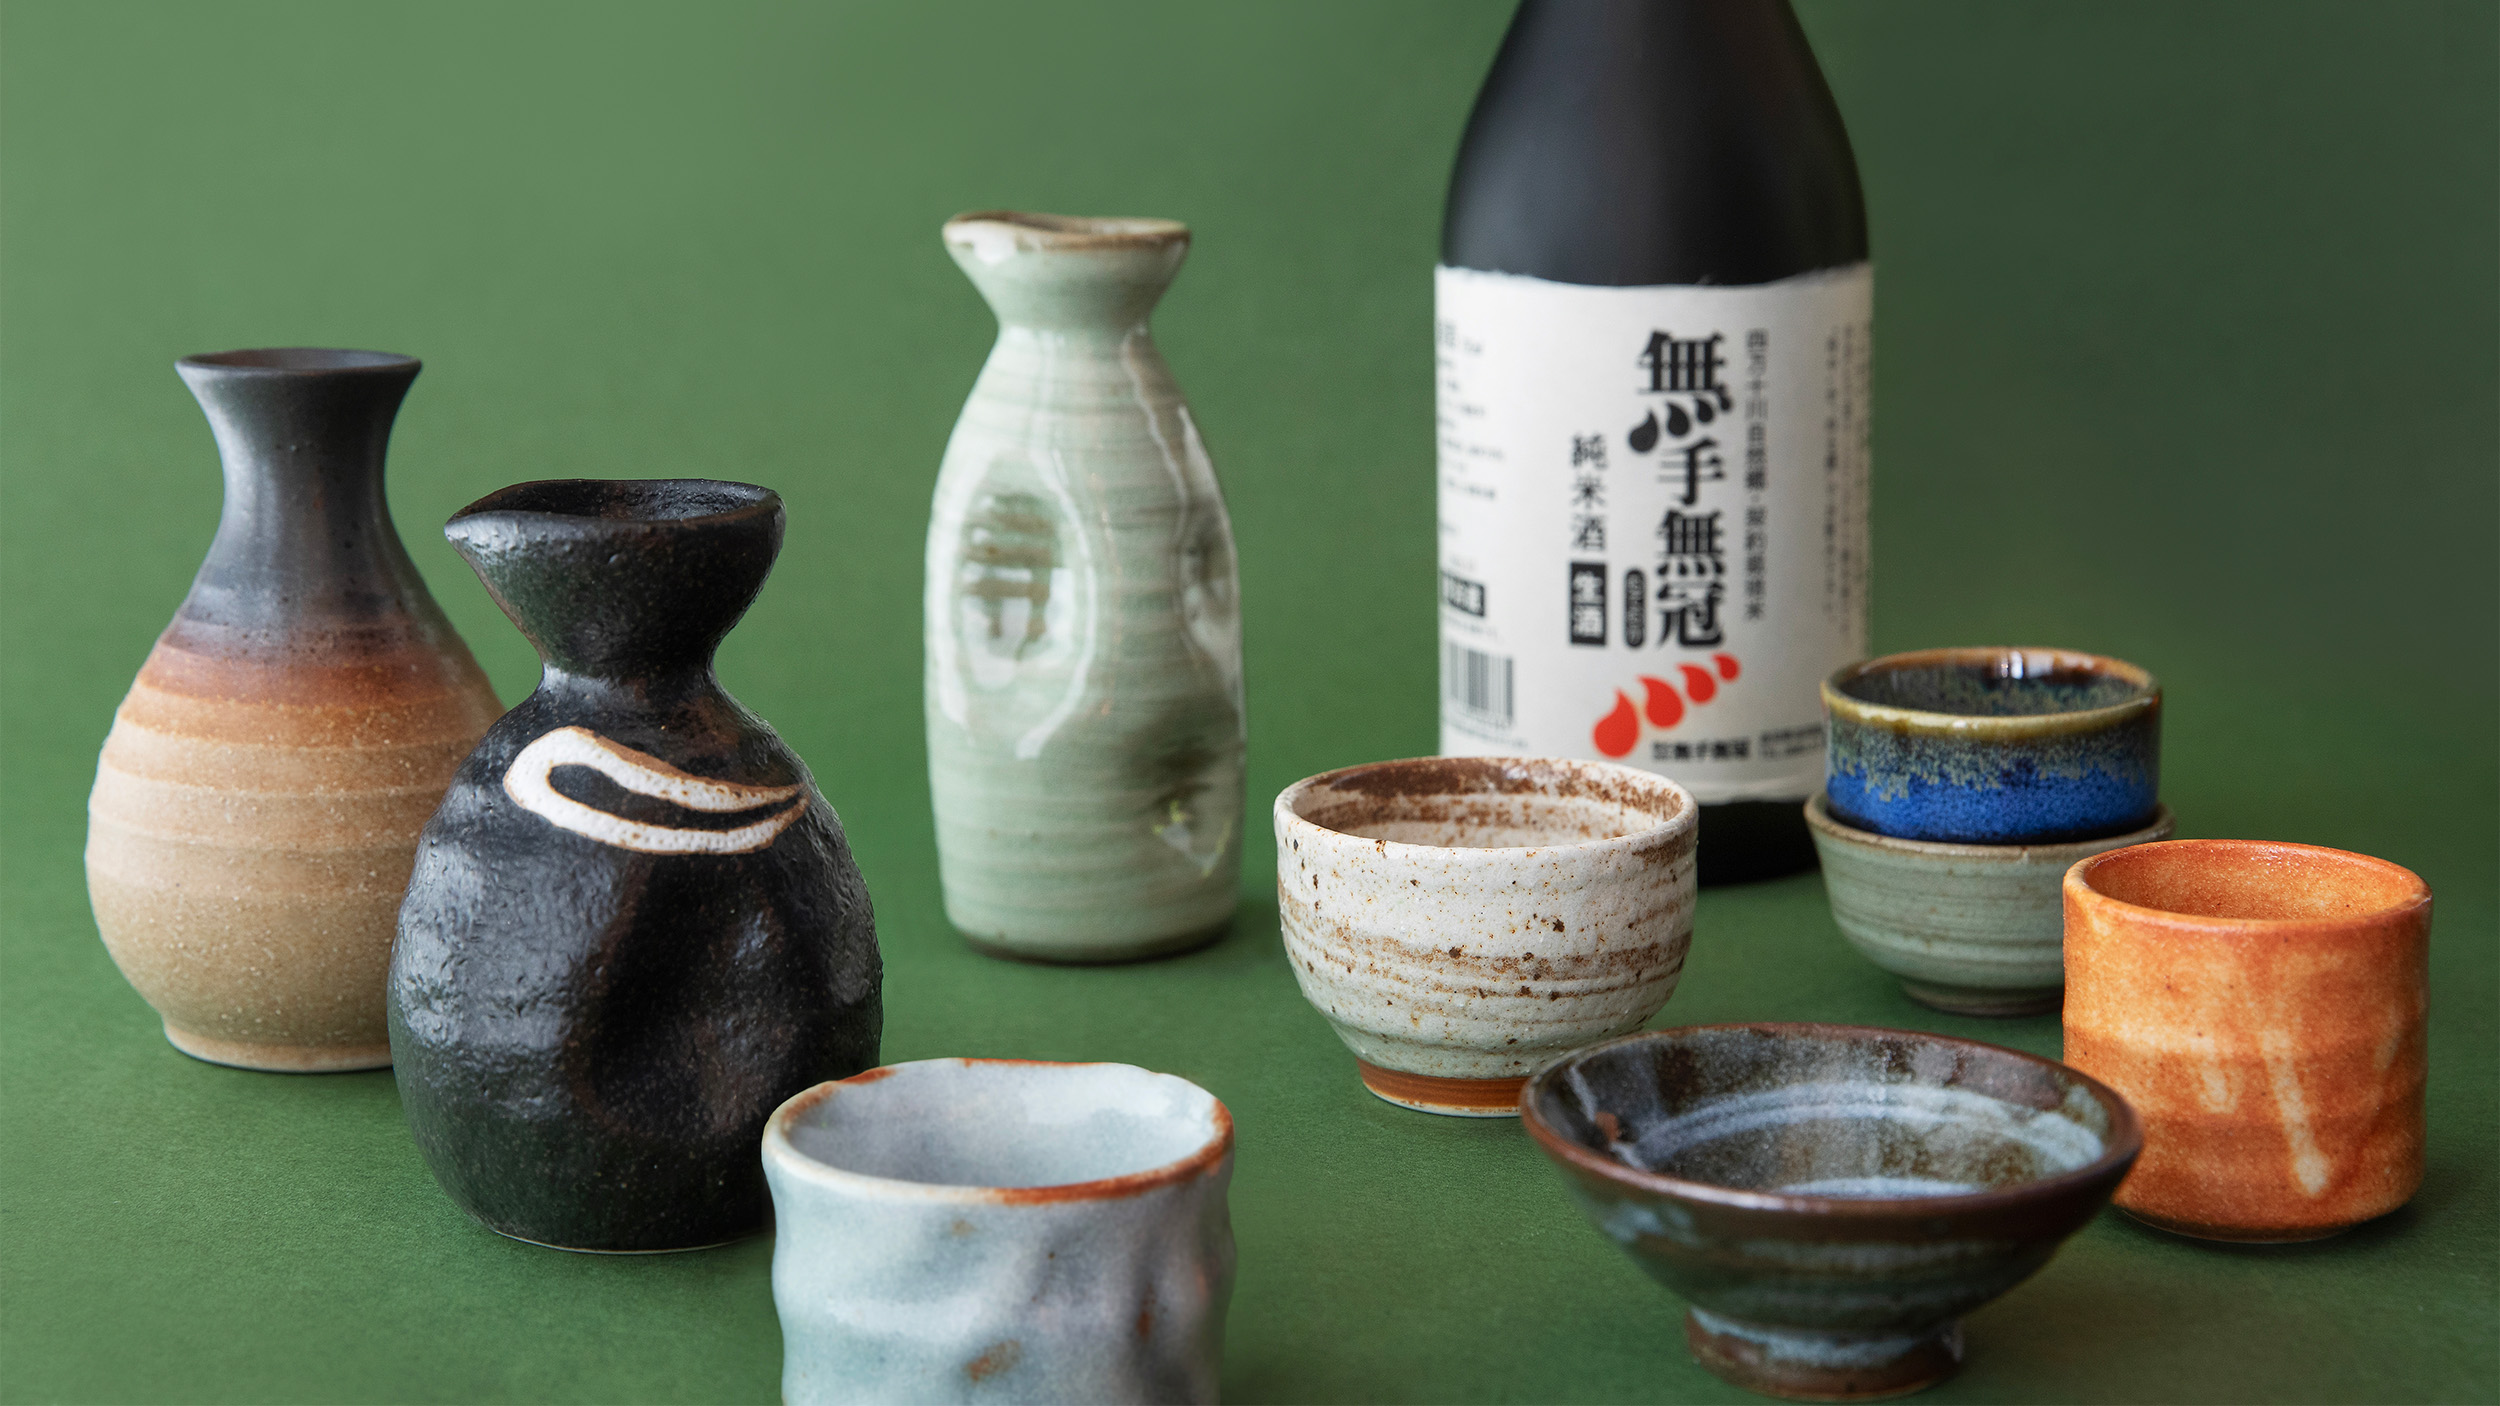 Various ceramic sake cups and bottles.